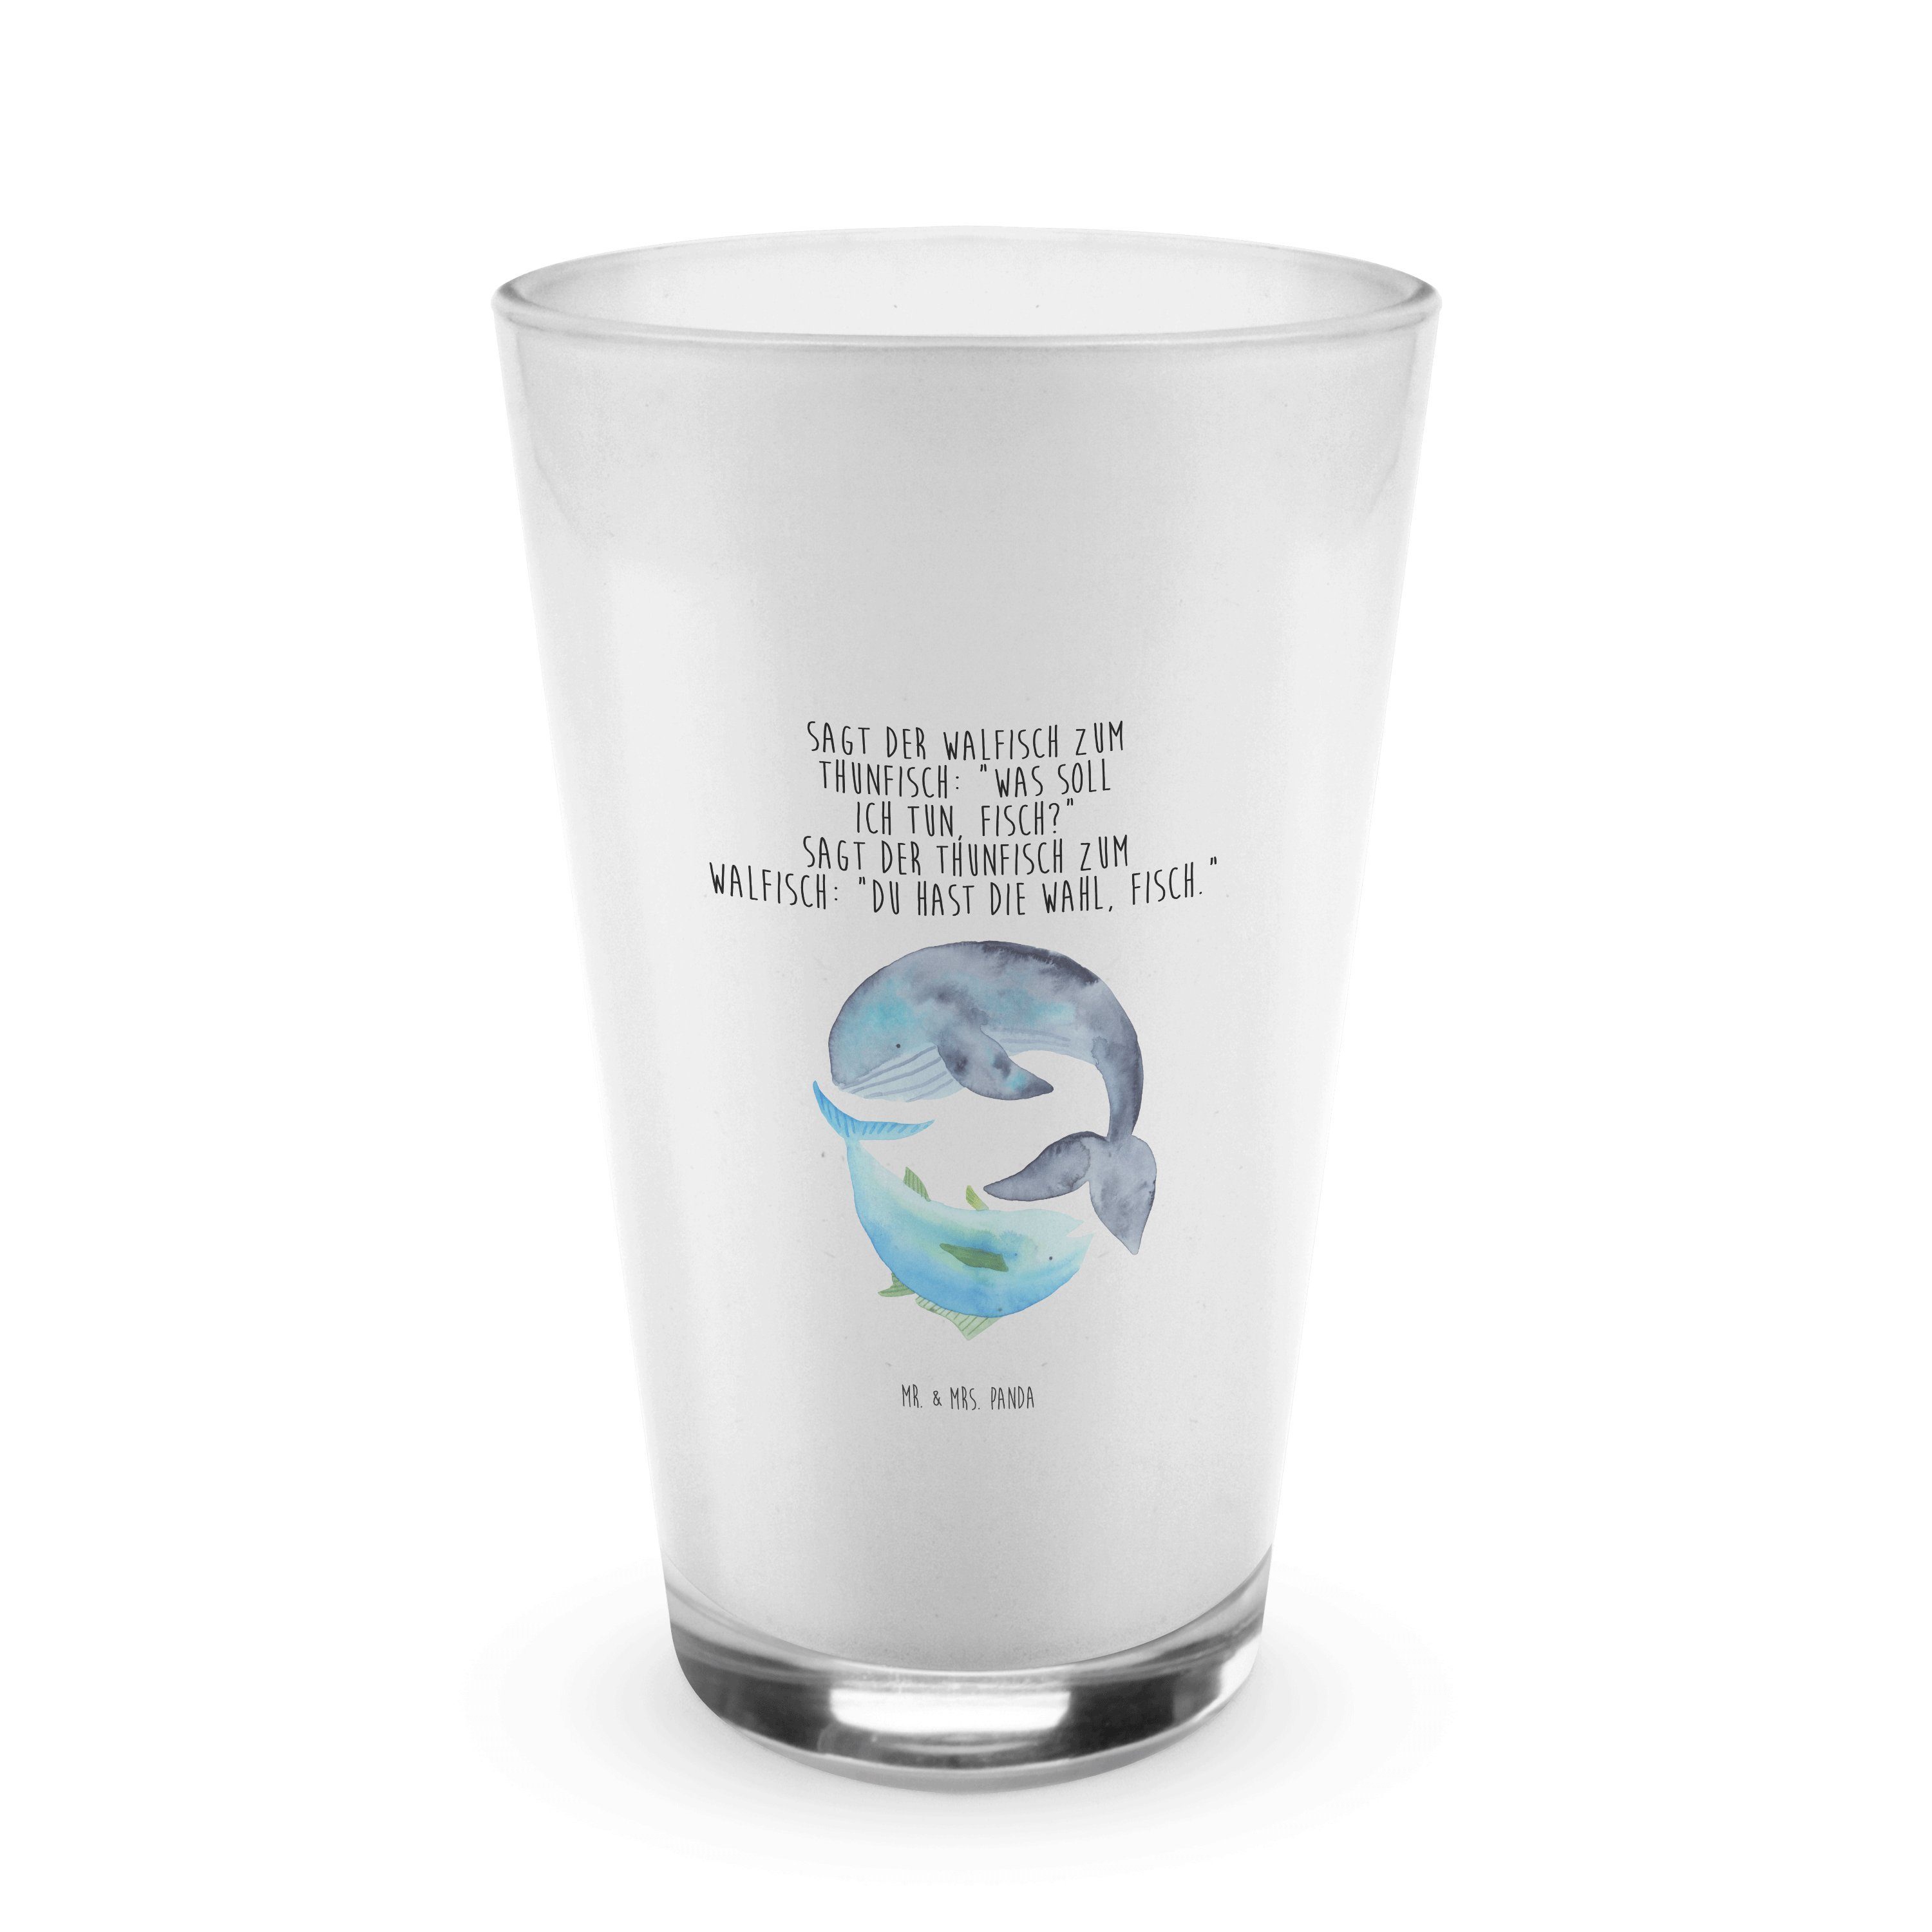 Mr. & Mrs. Panda Glas Walfisch & Thunfisch - Transparent - Geschenk, lustige Sprüche, Flach, Premium Glas